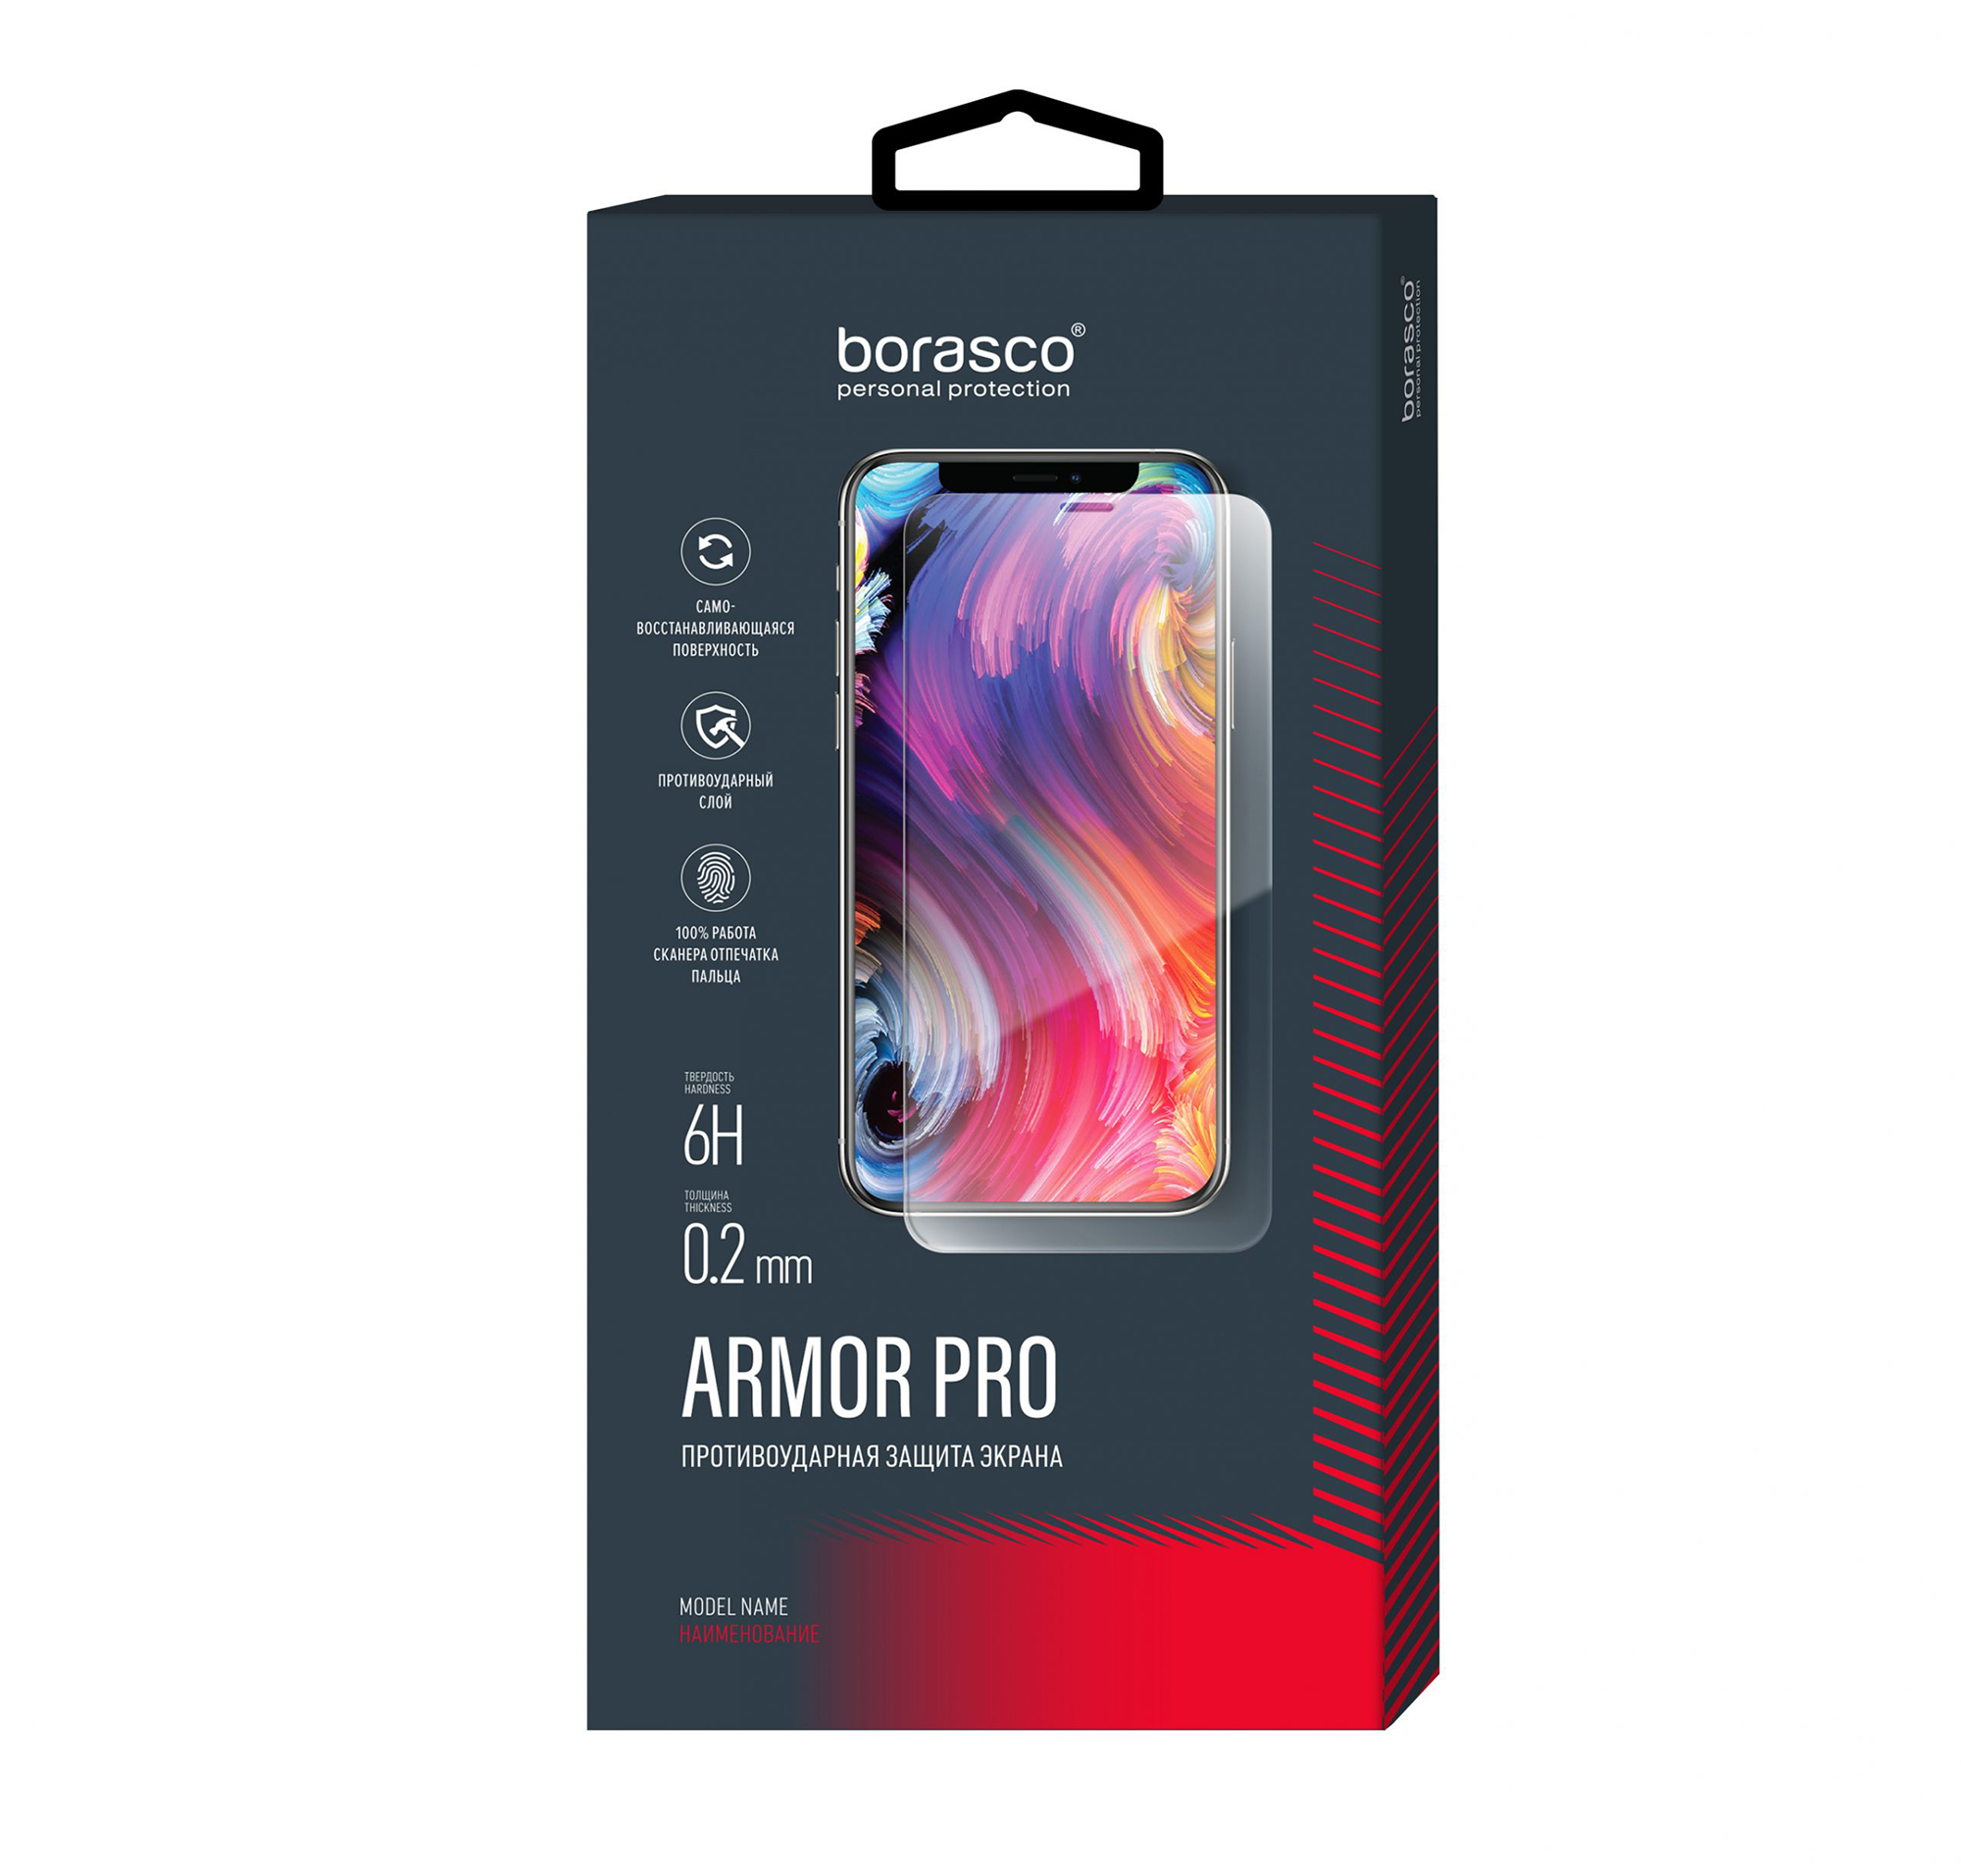 Защита экрана BoraSCO Armor Pro для Xiaomi Mi Note 10/ Mi Note 10 Lite цена и фото